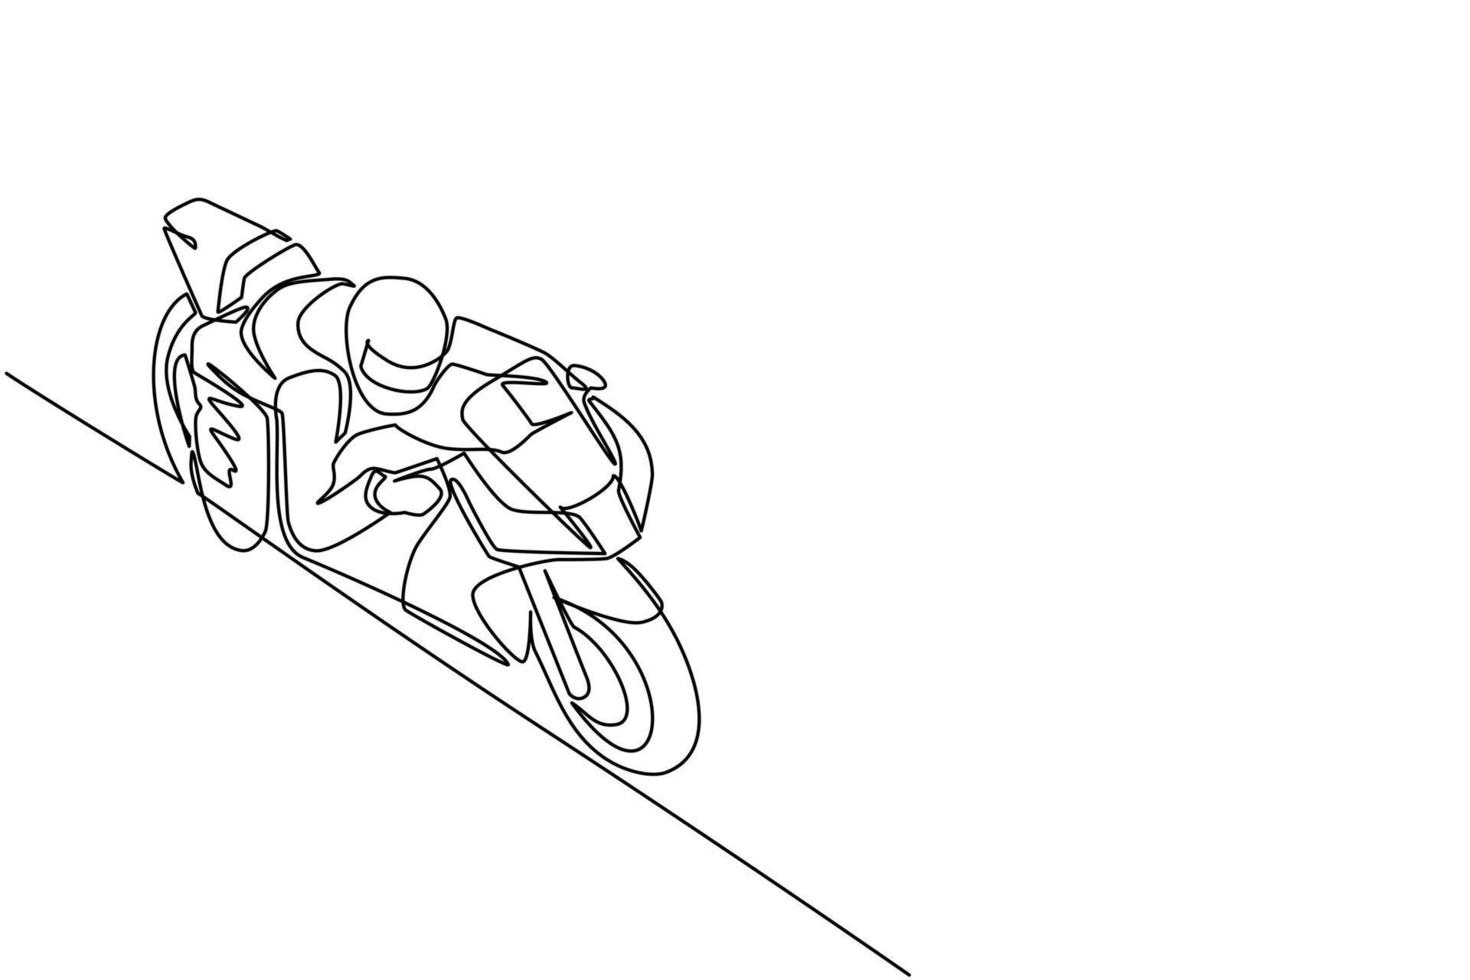 enda en rad ritning biker bär hjälm, ridning motorcykel i asfaltväg. ung man i raceroveraller och hjälm sitter på sportcykel. kontinuerlig linje rita design grafisk vektorillustration vektor